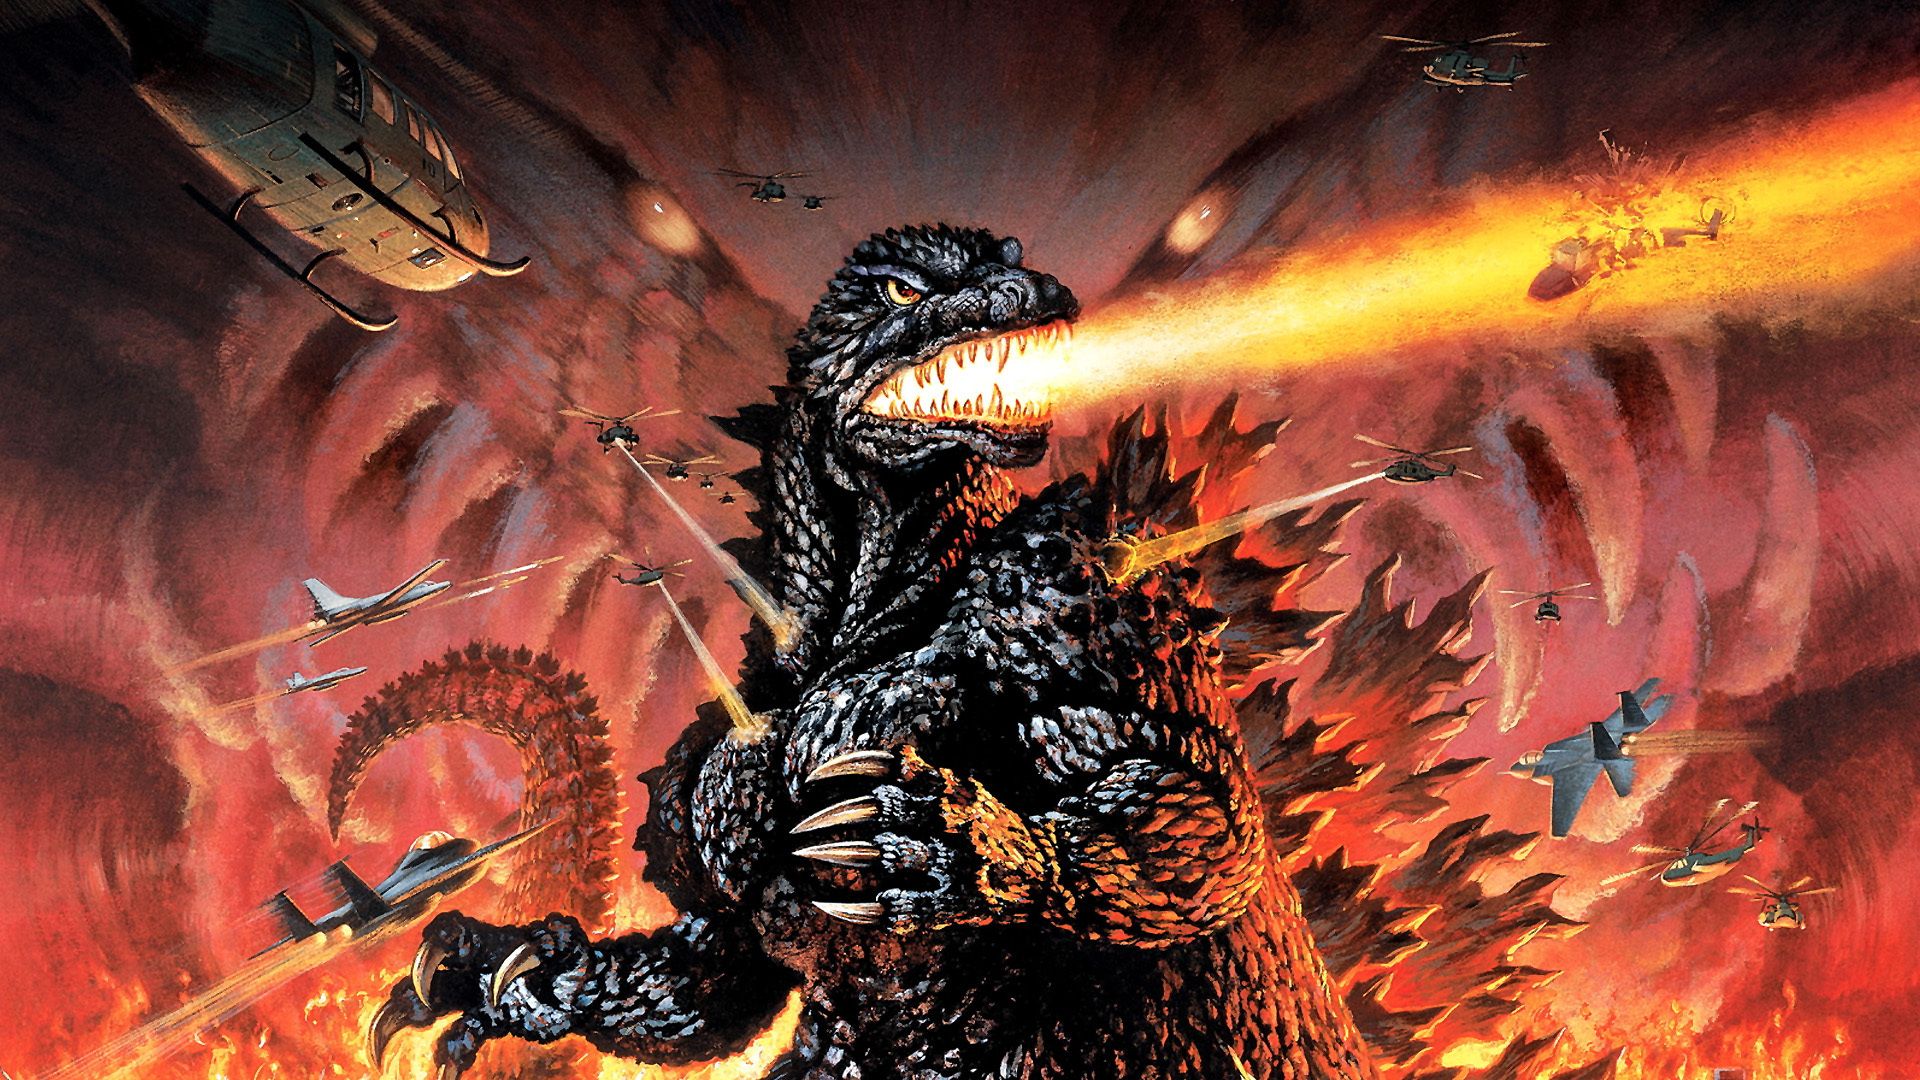 Godzilla Wallpaper. T Rex Godzilla Wallpaper, Godzilla Wallpaper And Tyrannosaurus Rex Godzilla Wallpaper